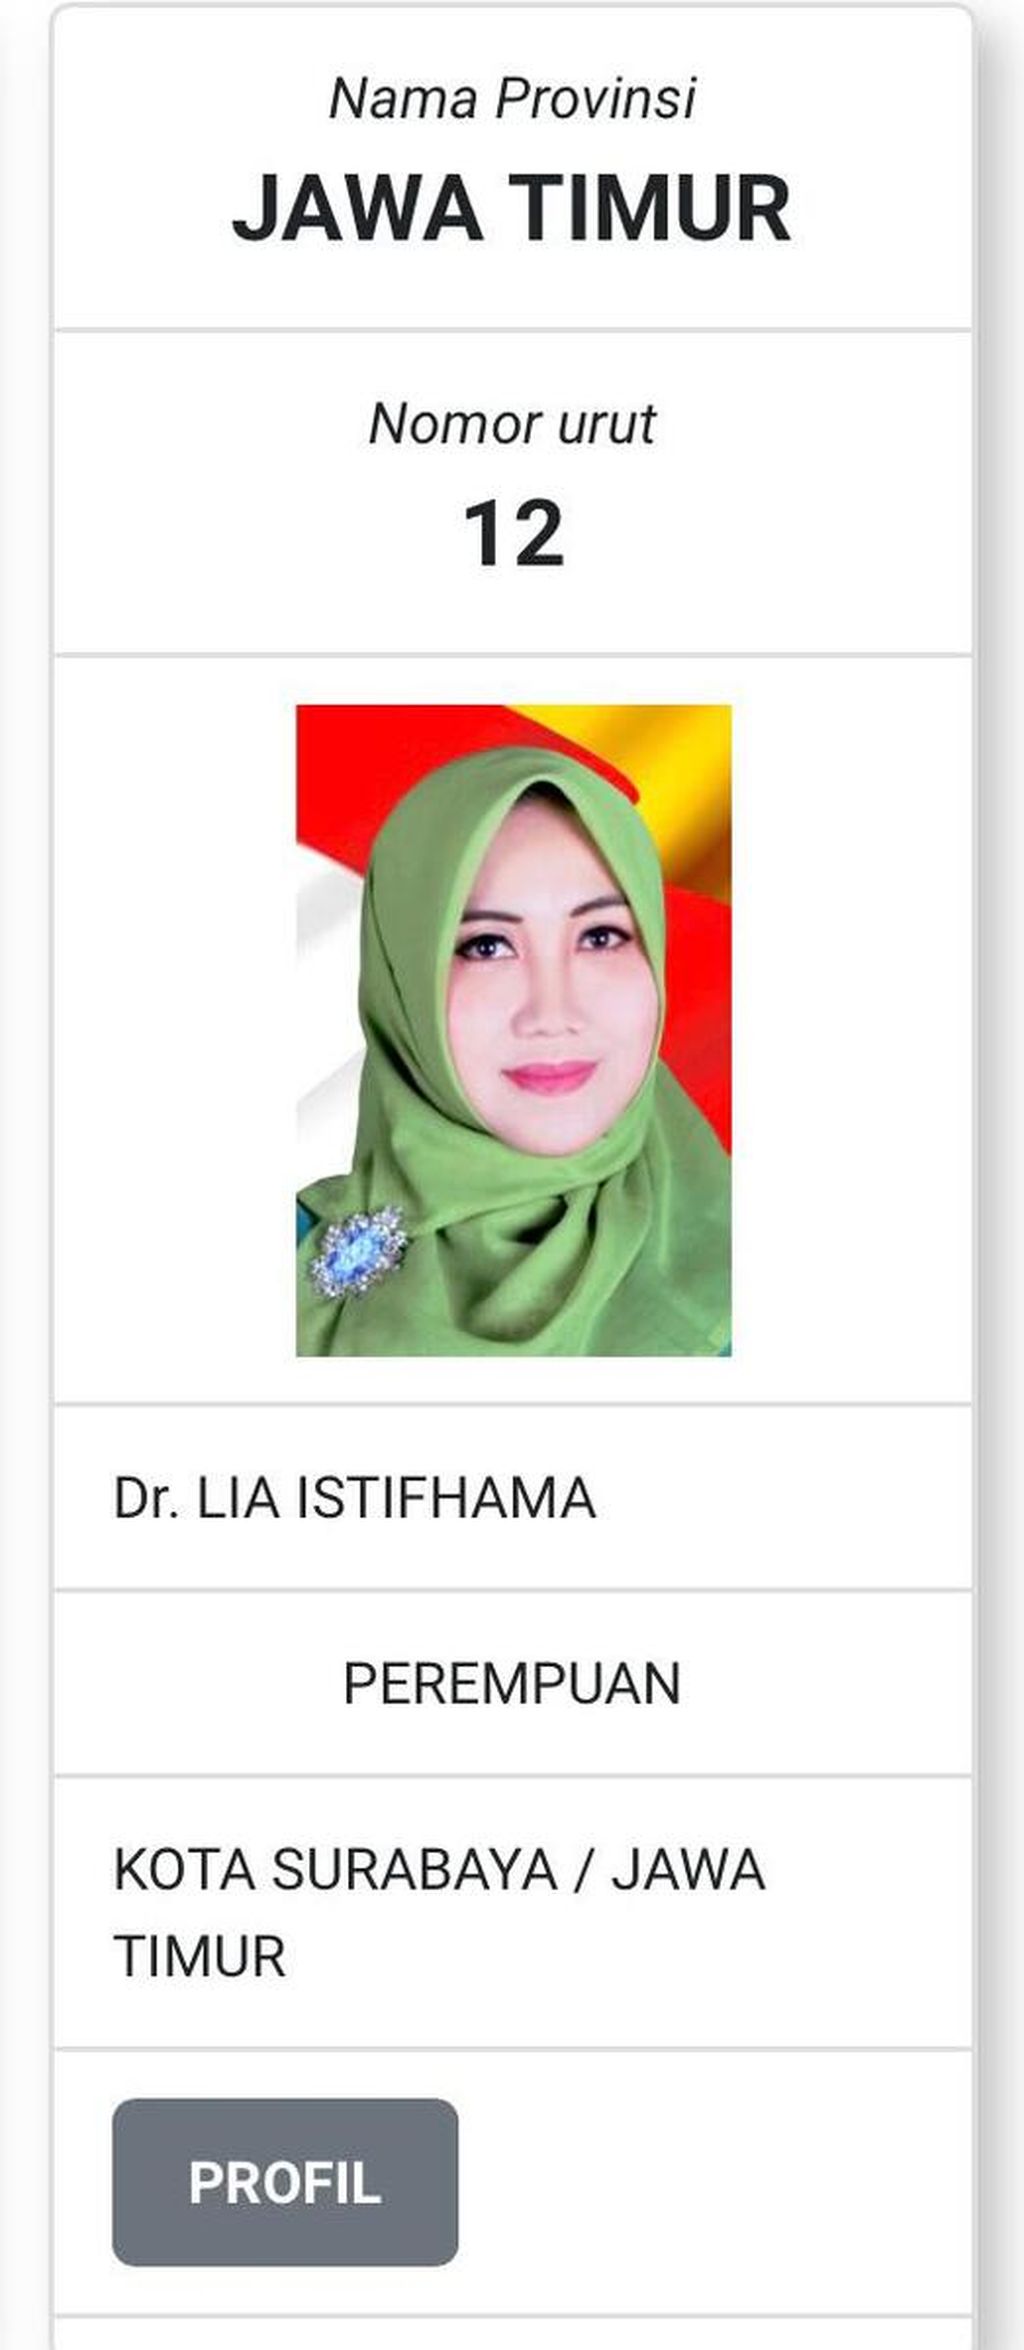 Tangkapan layar profil Lia Istifhama atau akrab dipanggil Ning Lia, calon senator dari Jawa Timur.